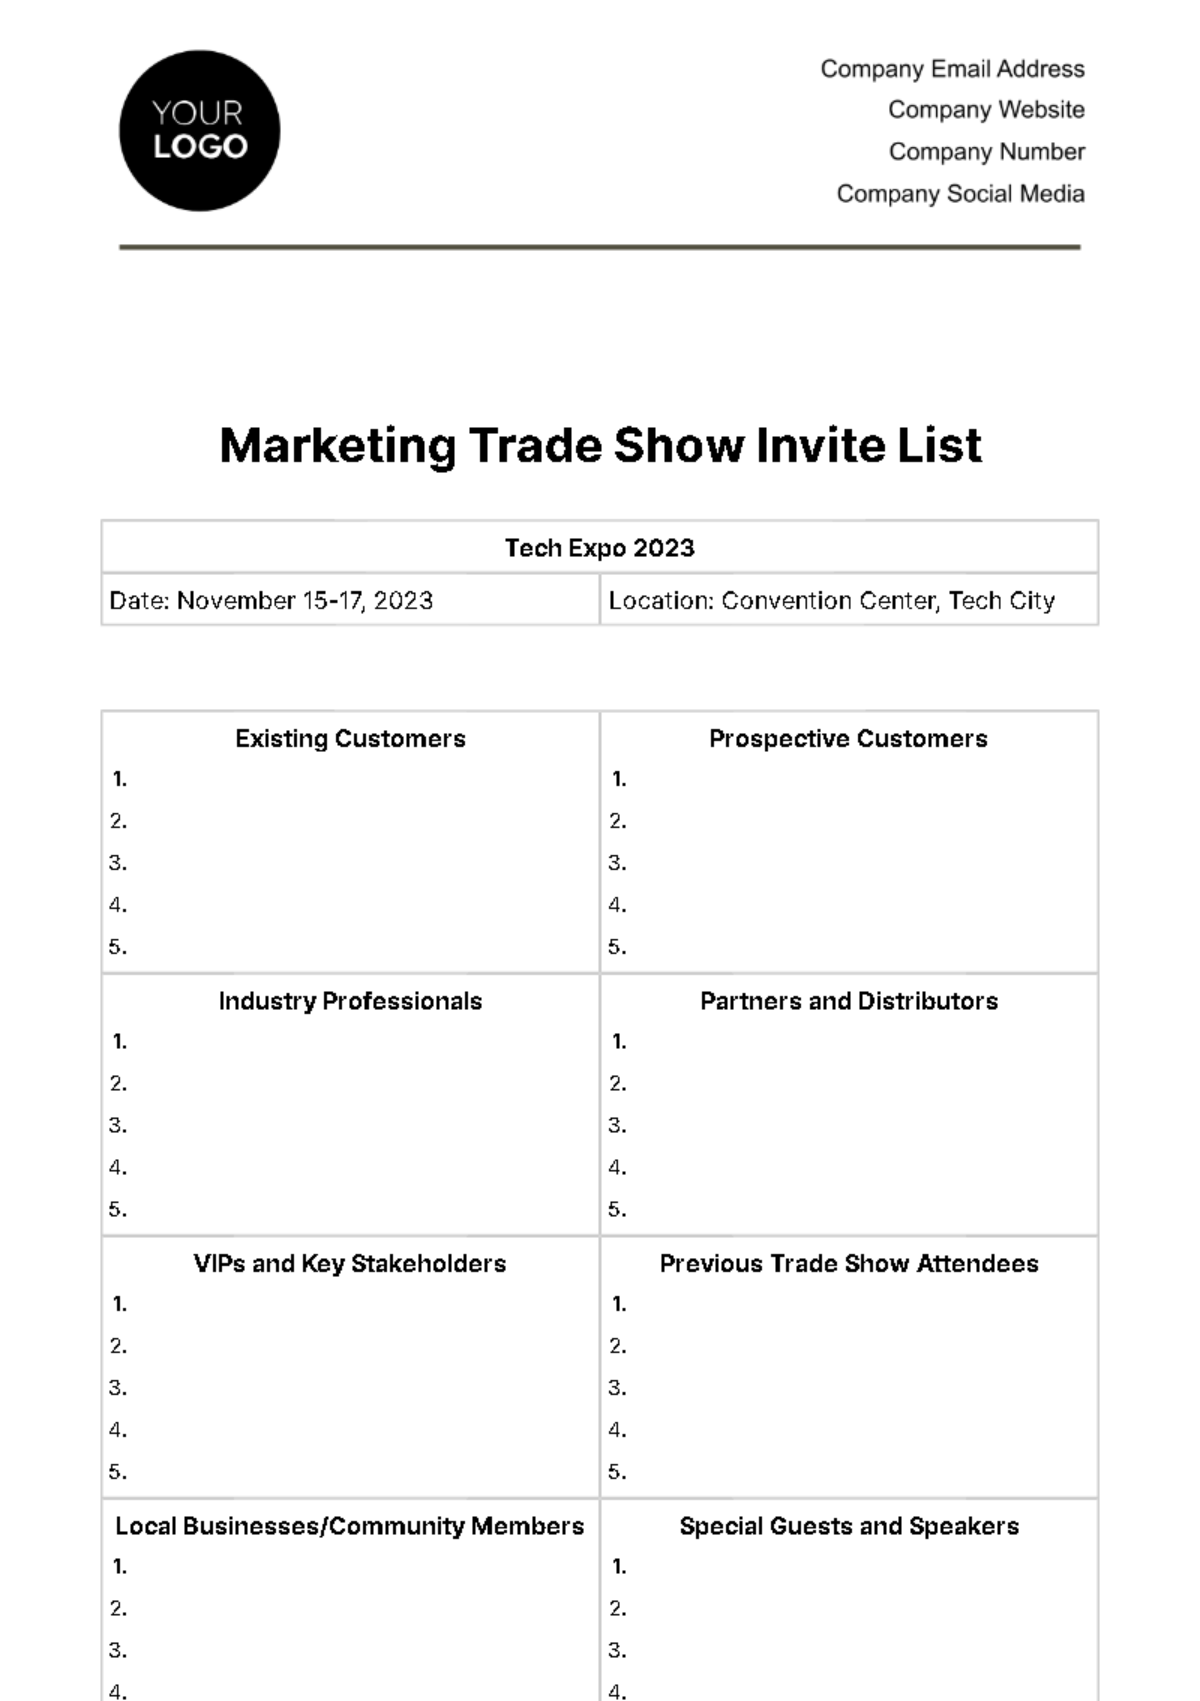 Marketing Trade Show Invite List Template